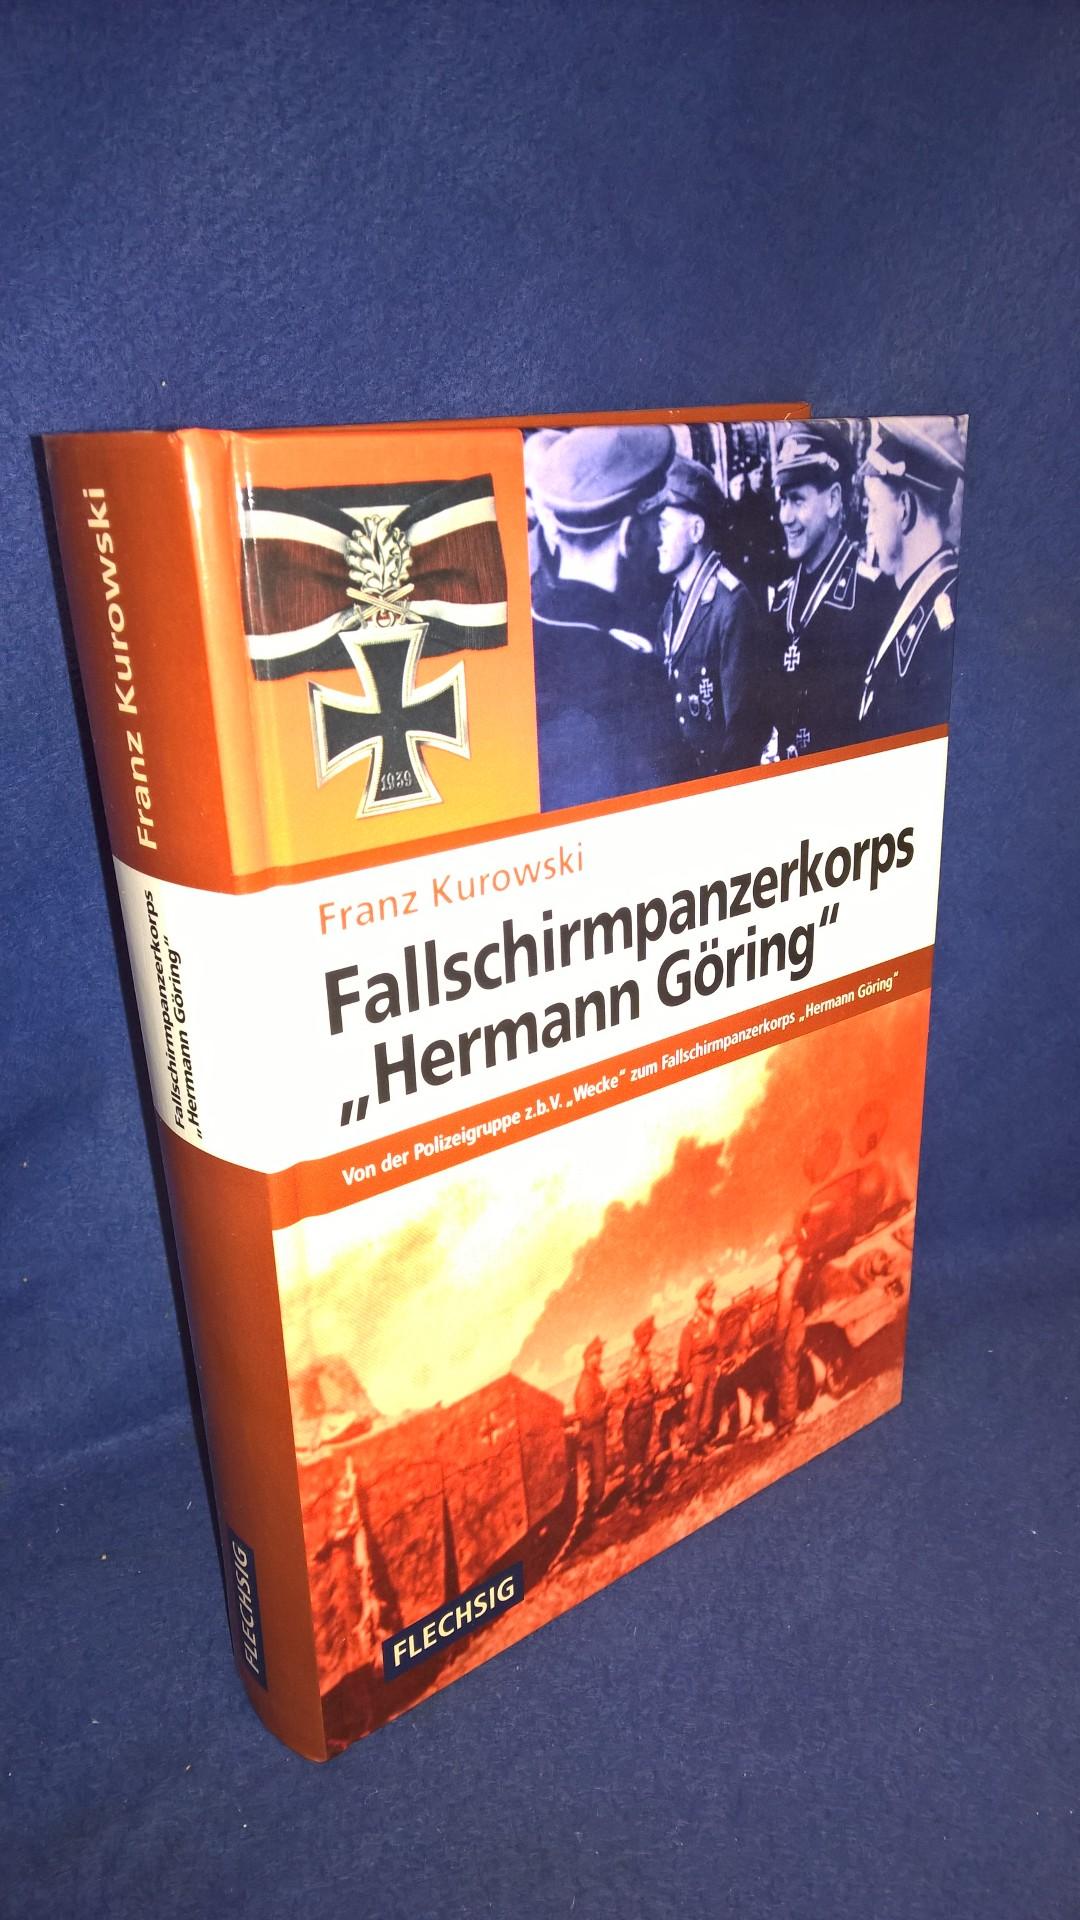 Fallschirmpanzerkorps "Hermann Göring": Von der Polizeigruppe z.b.V. "Wecke" zum Fallschirmpanzerkorps "Hermann Göring".